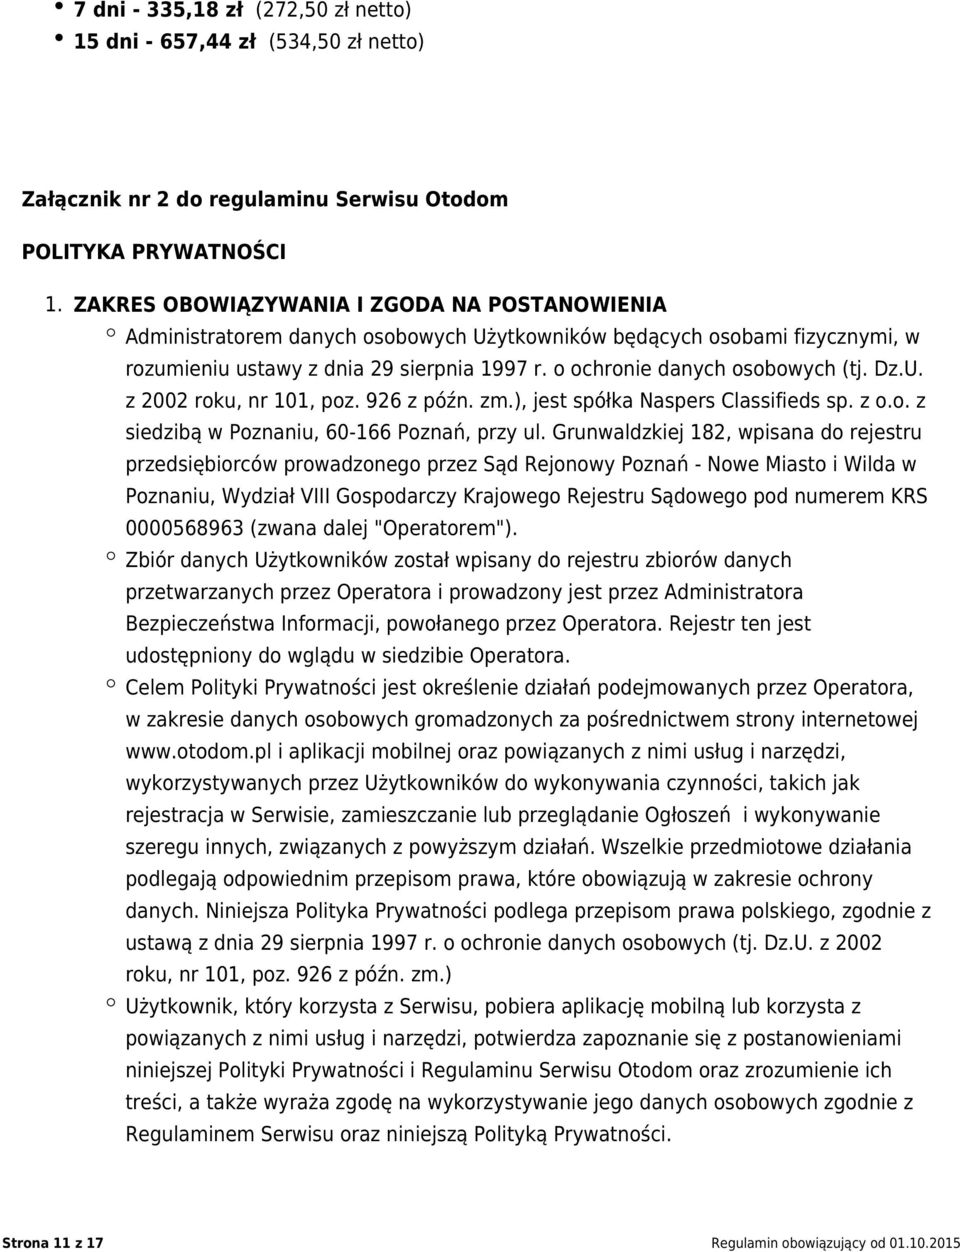 Dz.U. z 2002 roku, nr 101, poz. 926 z późn. zm.), jest spółka Naspers Classifieds sp. z o.o. z siedzibą w Poznaniu, 60-166 Poznań, przy ul.